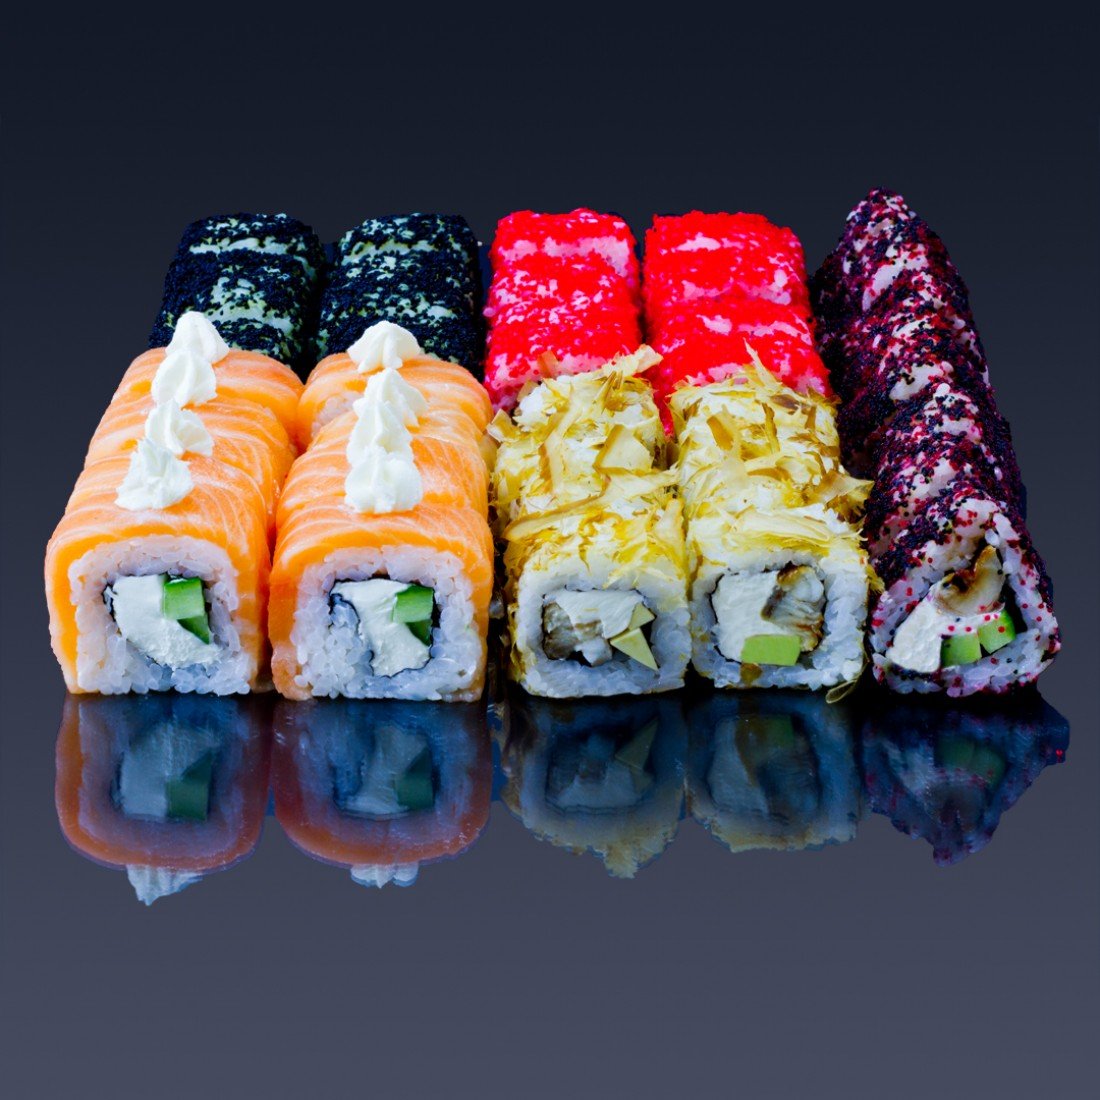 Дешевые и вкусные суши с доставкой фото 14